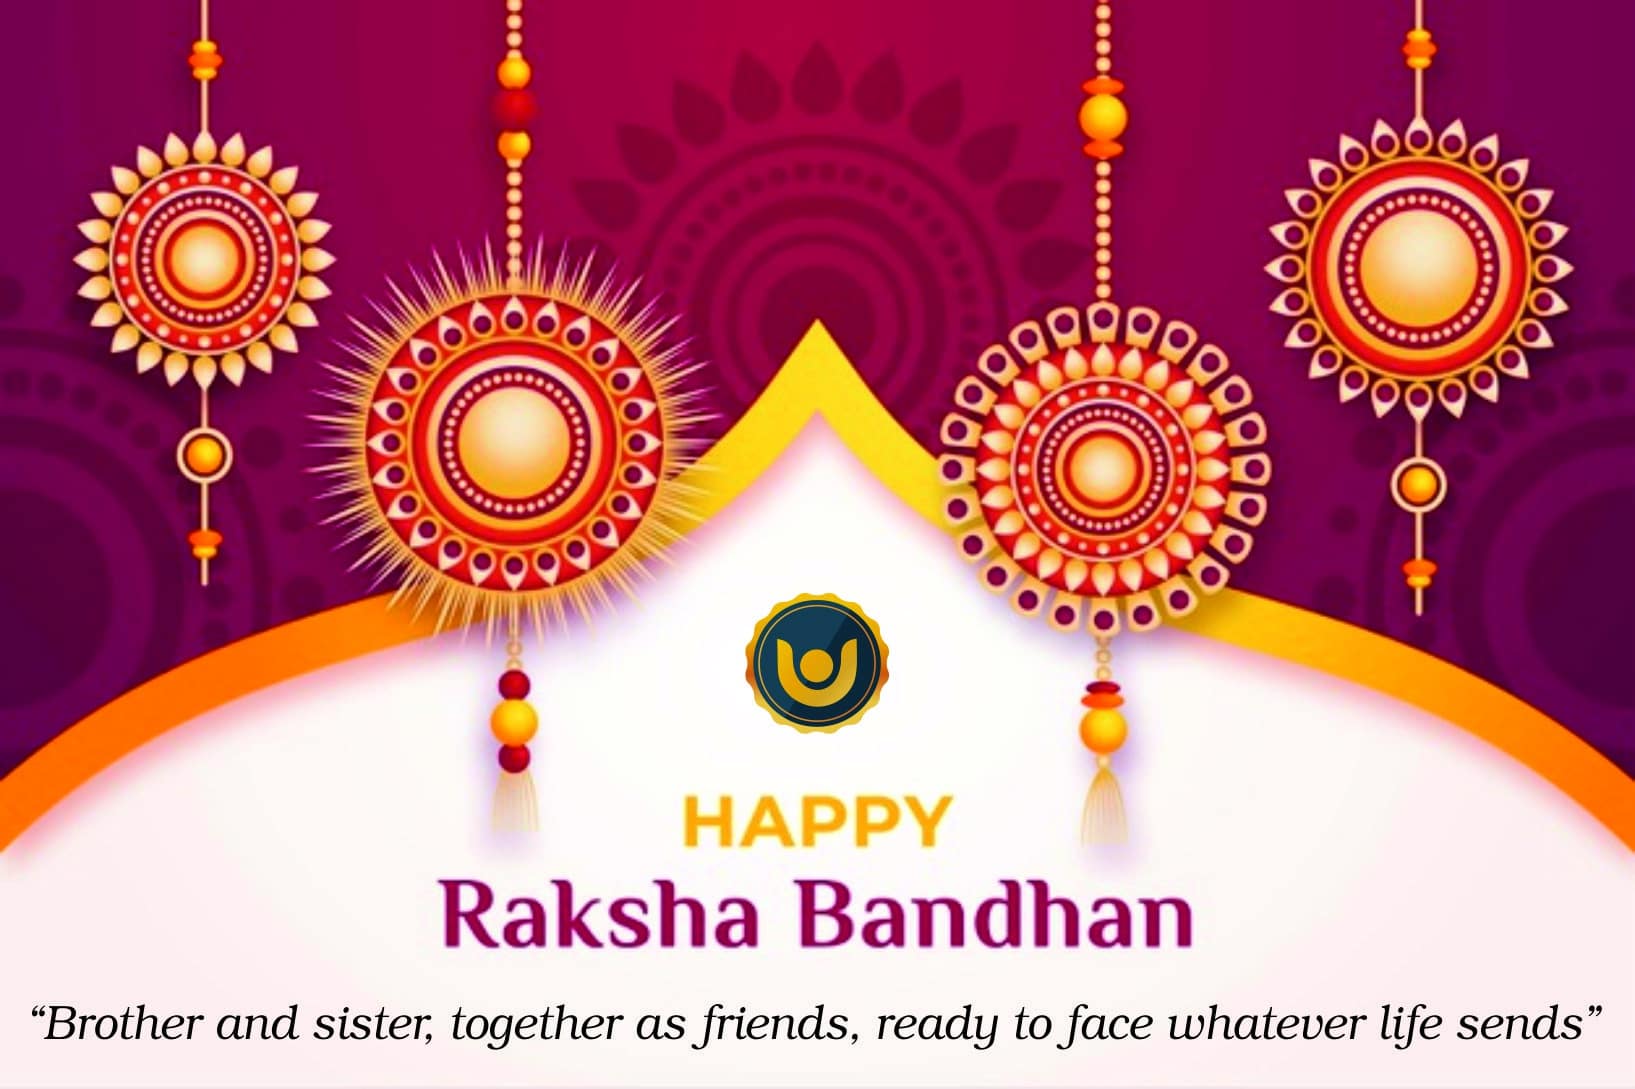 How to Celebrate Raksha Bandhan? 2021